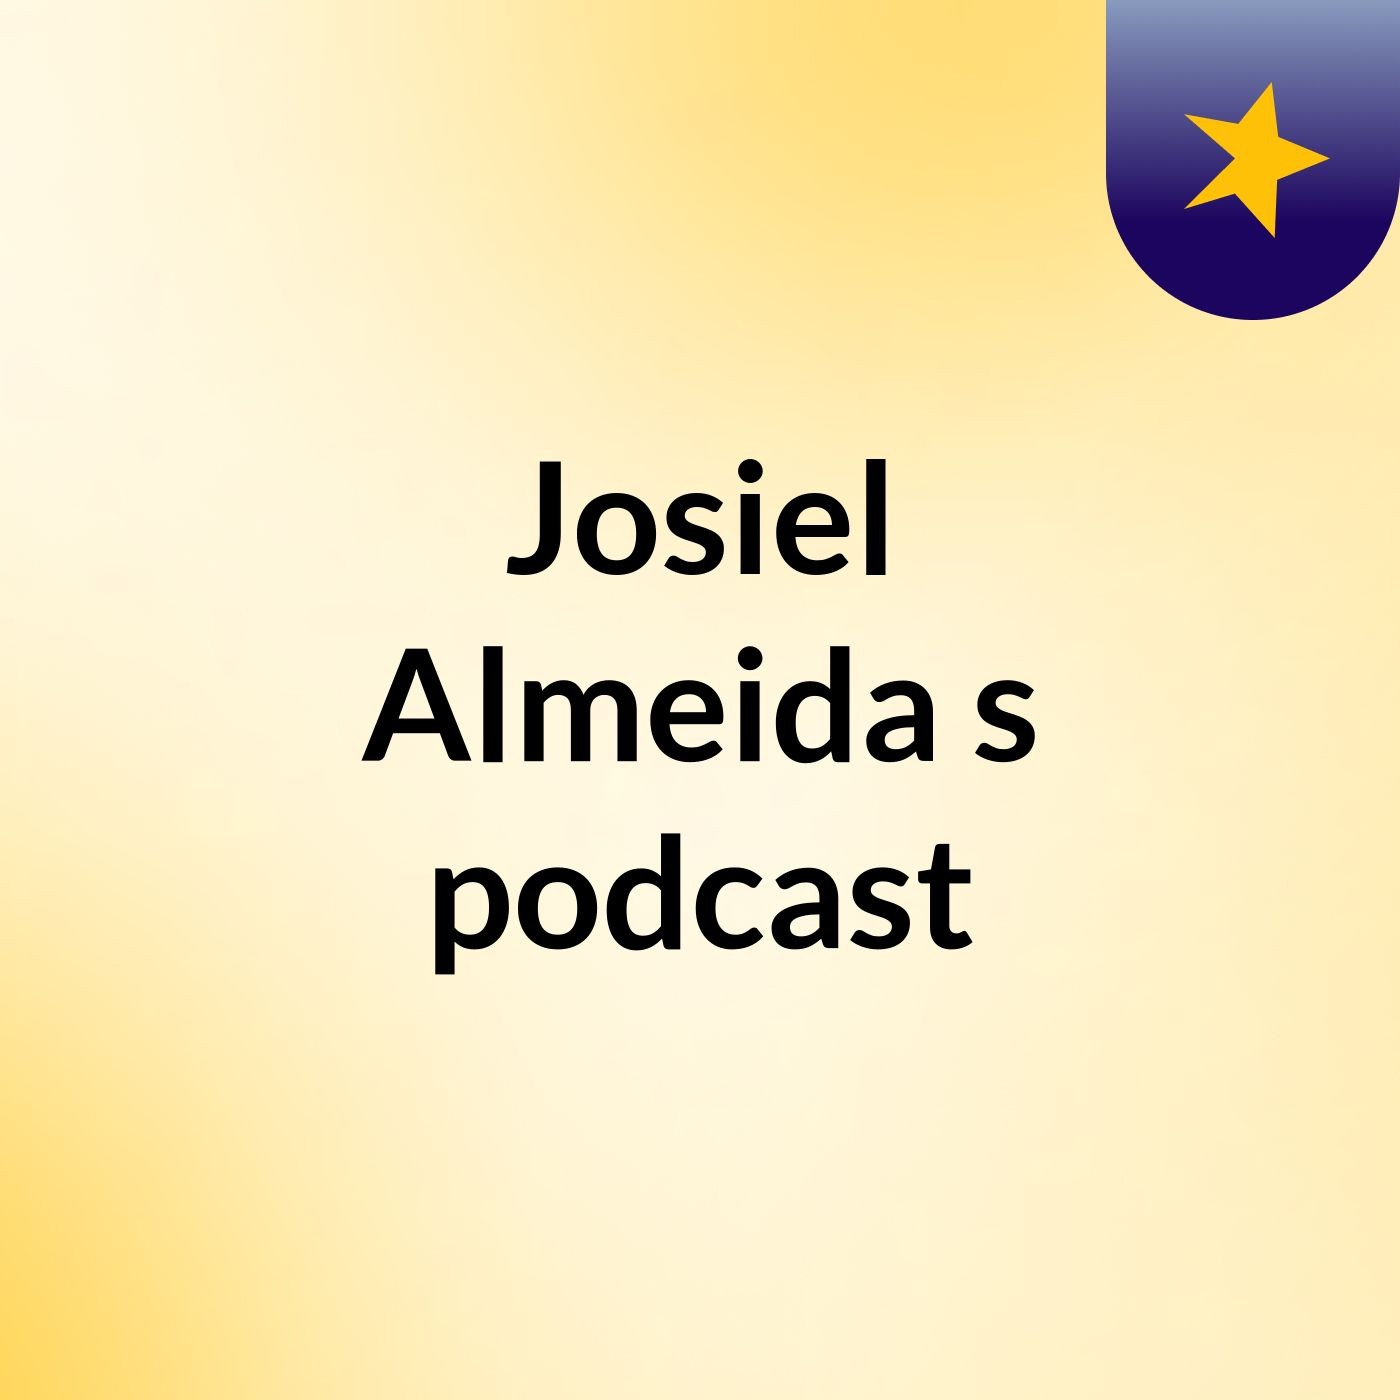 Josiel Almeida's podcast